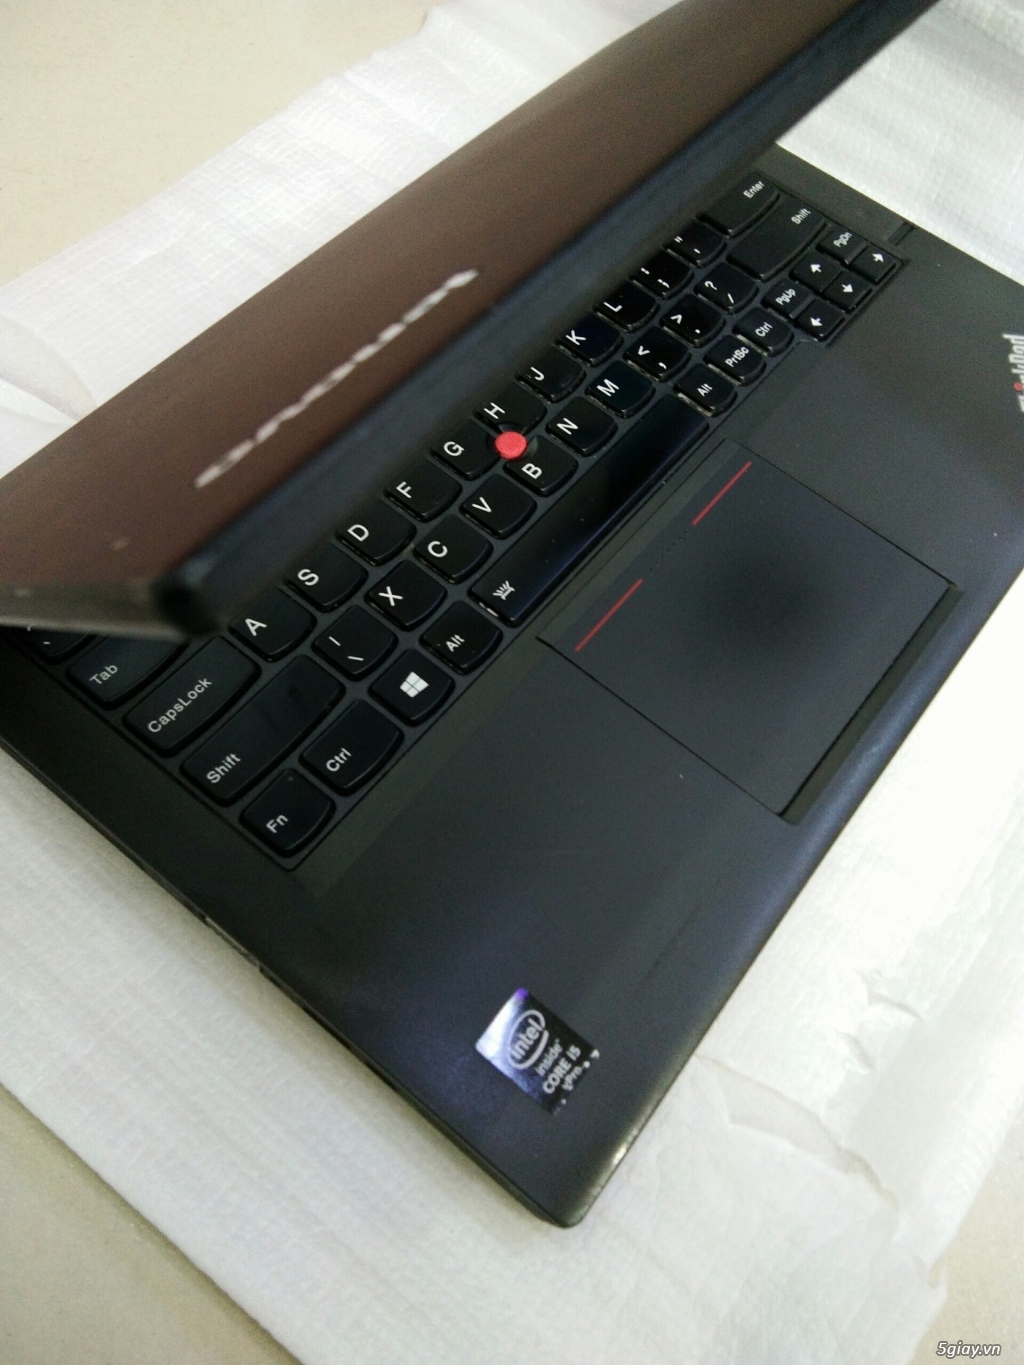 Dell đồ họa Precision M4600 , i7